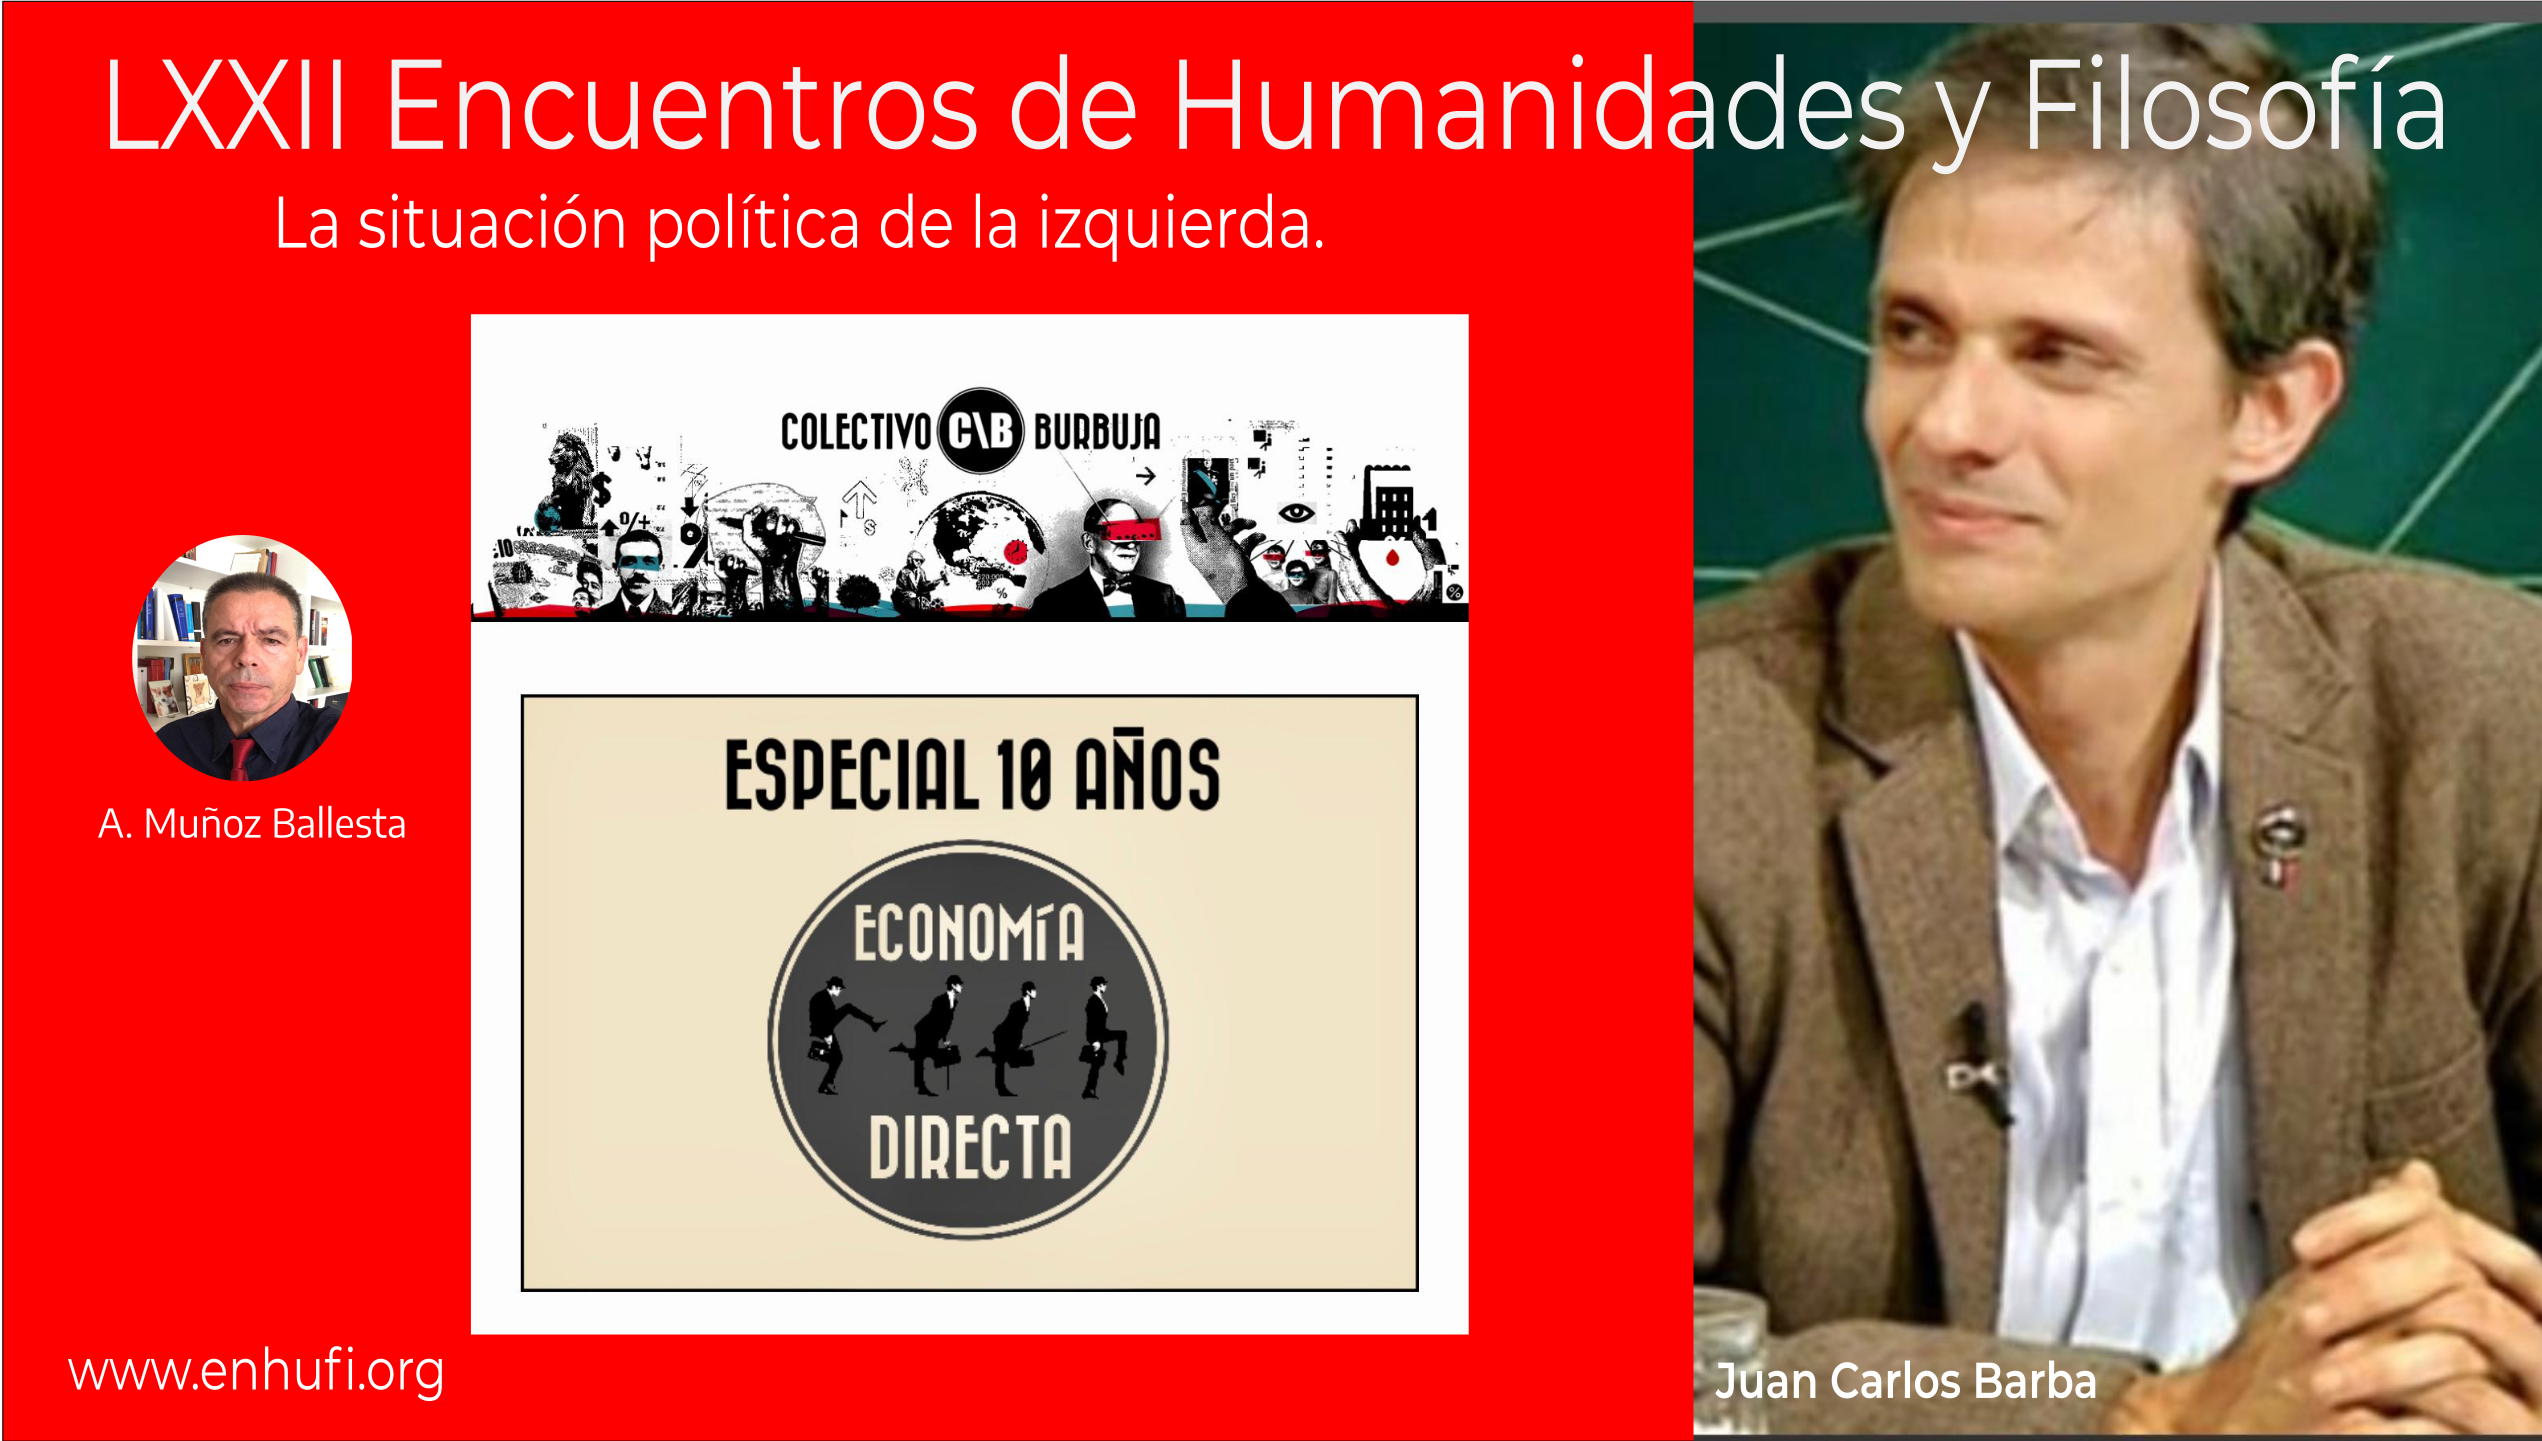 LXXII Encuentros Humanidades y Filosofía, Juan Carlos Barba , la situación política de la izquierda y medios de comunicación.